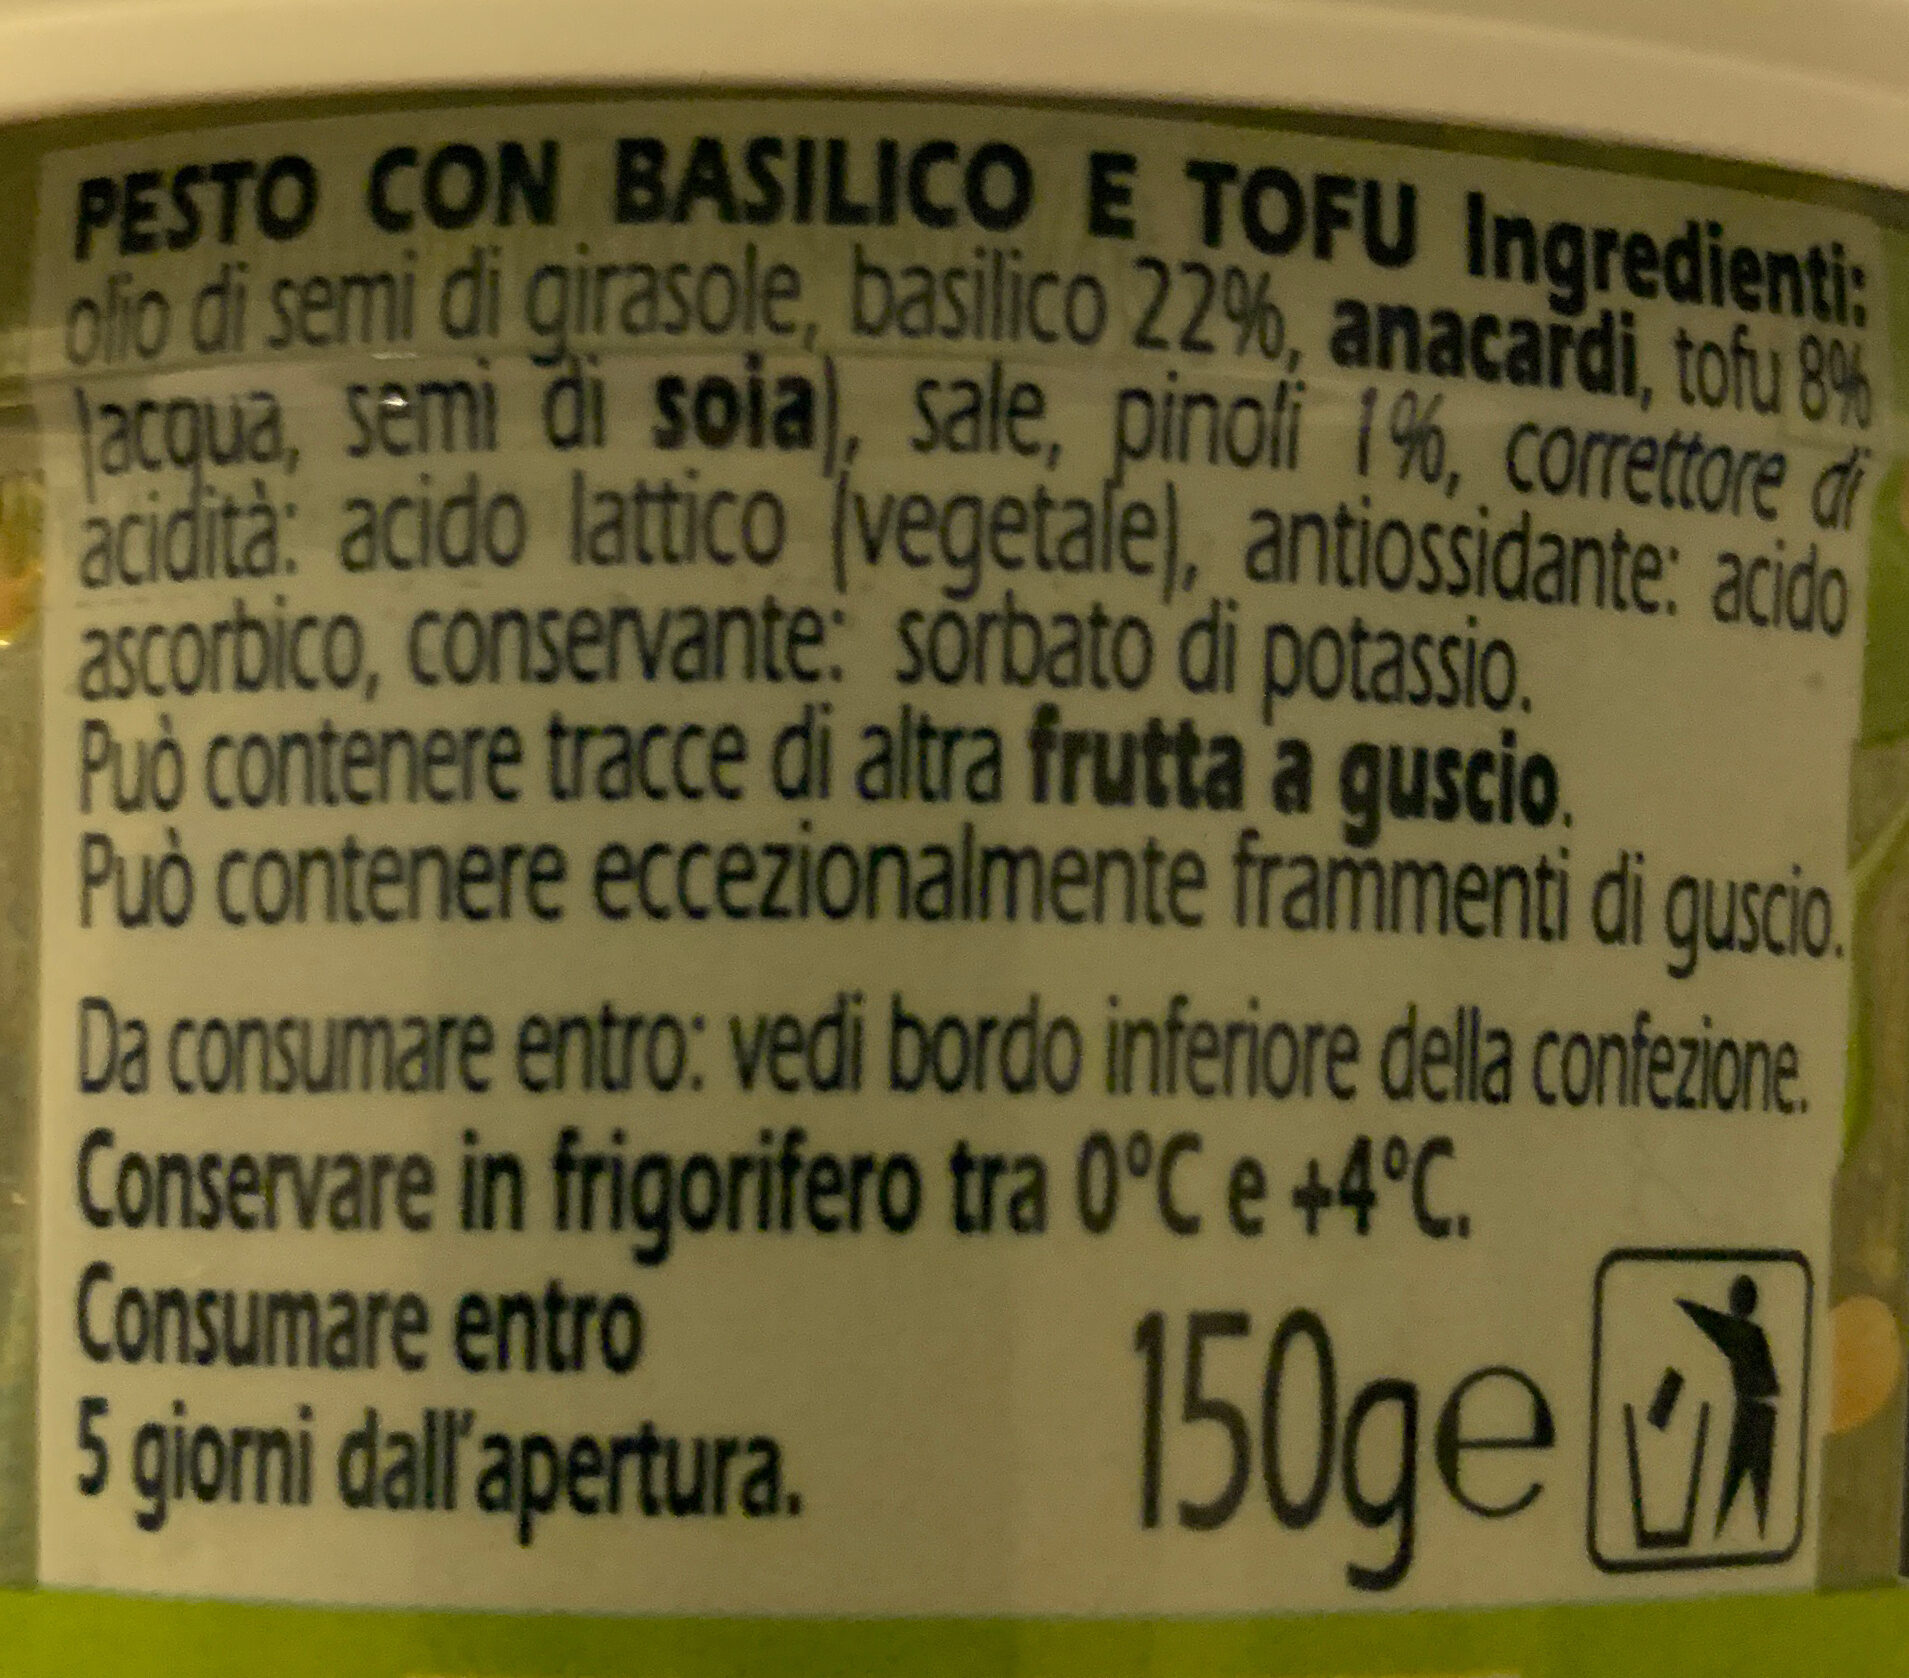 Pesto vegetale - Ingredients - it